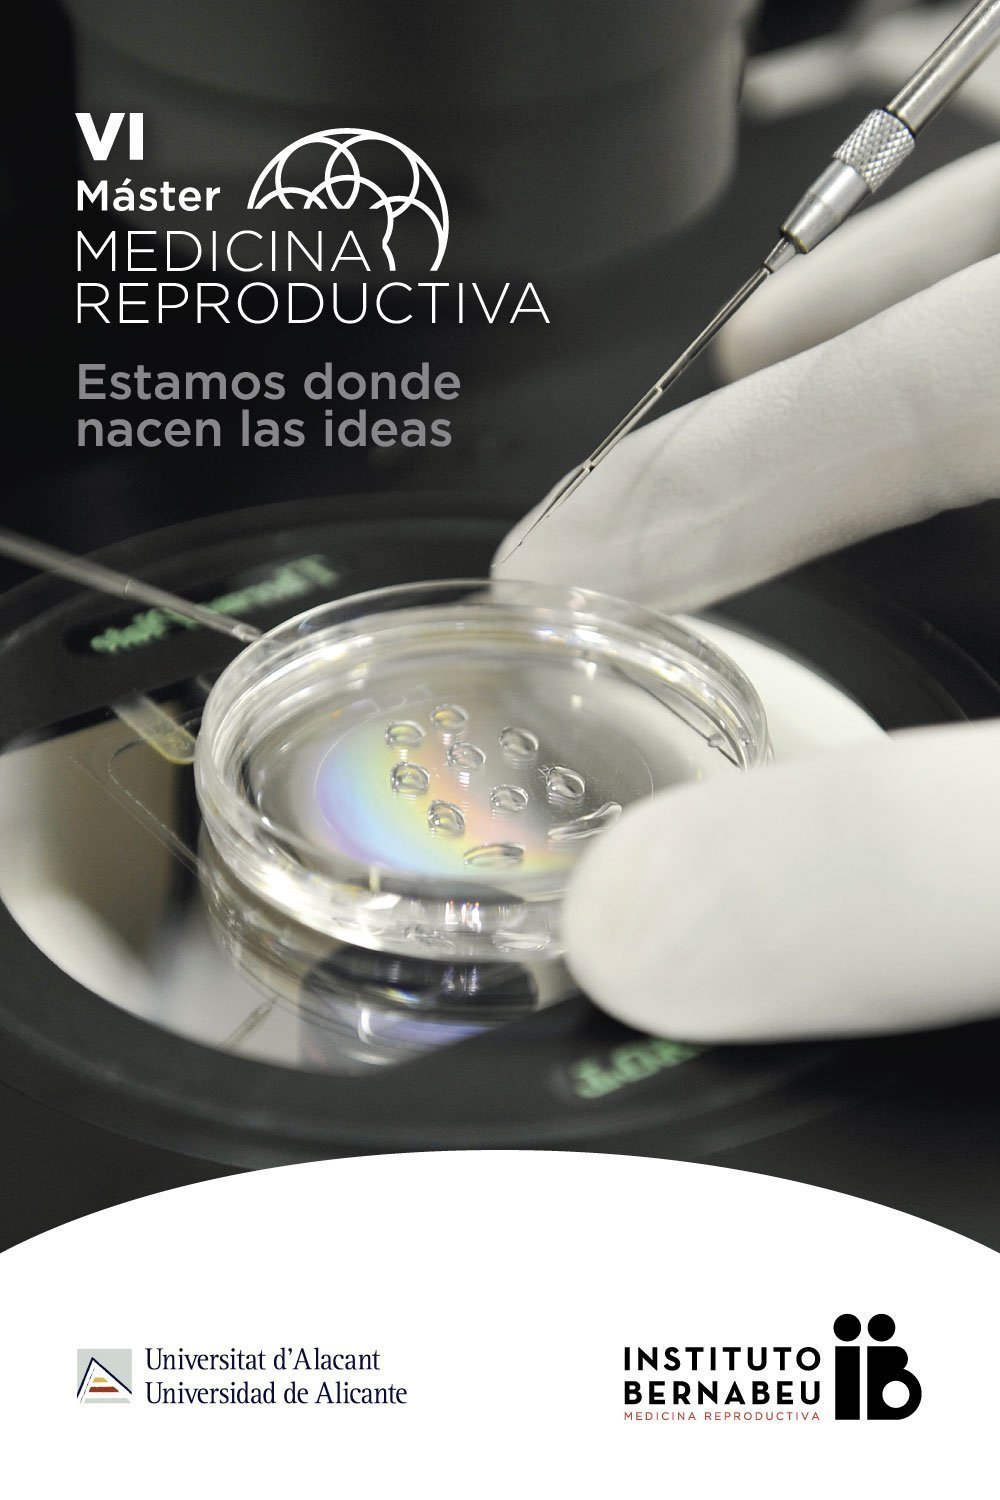 VI Máster en Medicina Reproductiva Universidad de Alicante — Instituto Bernabeu